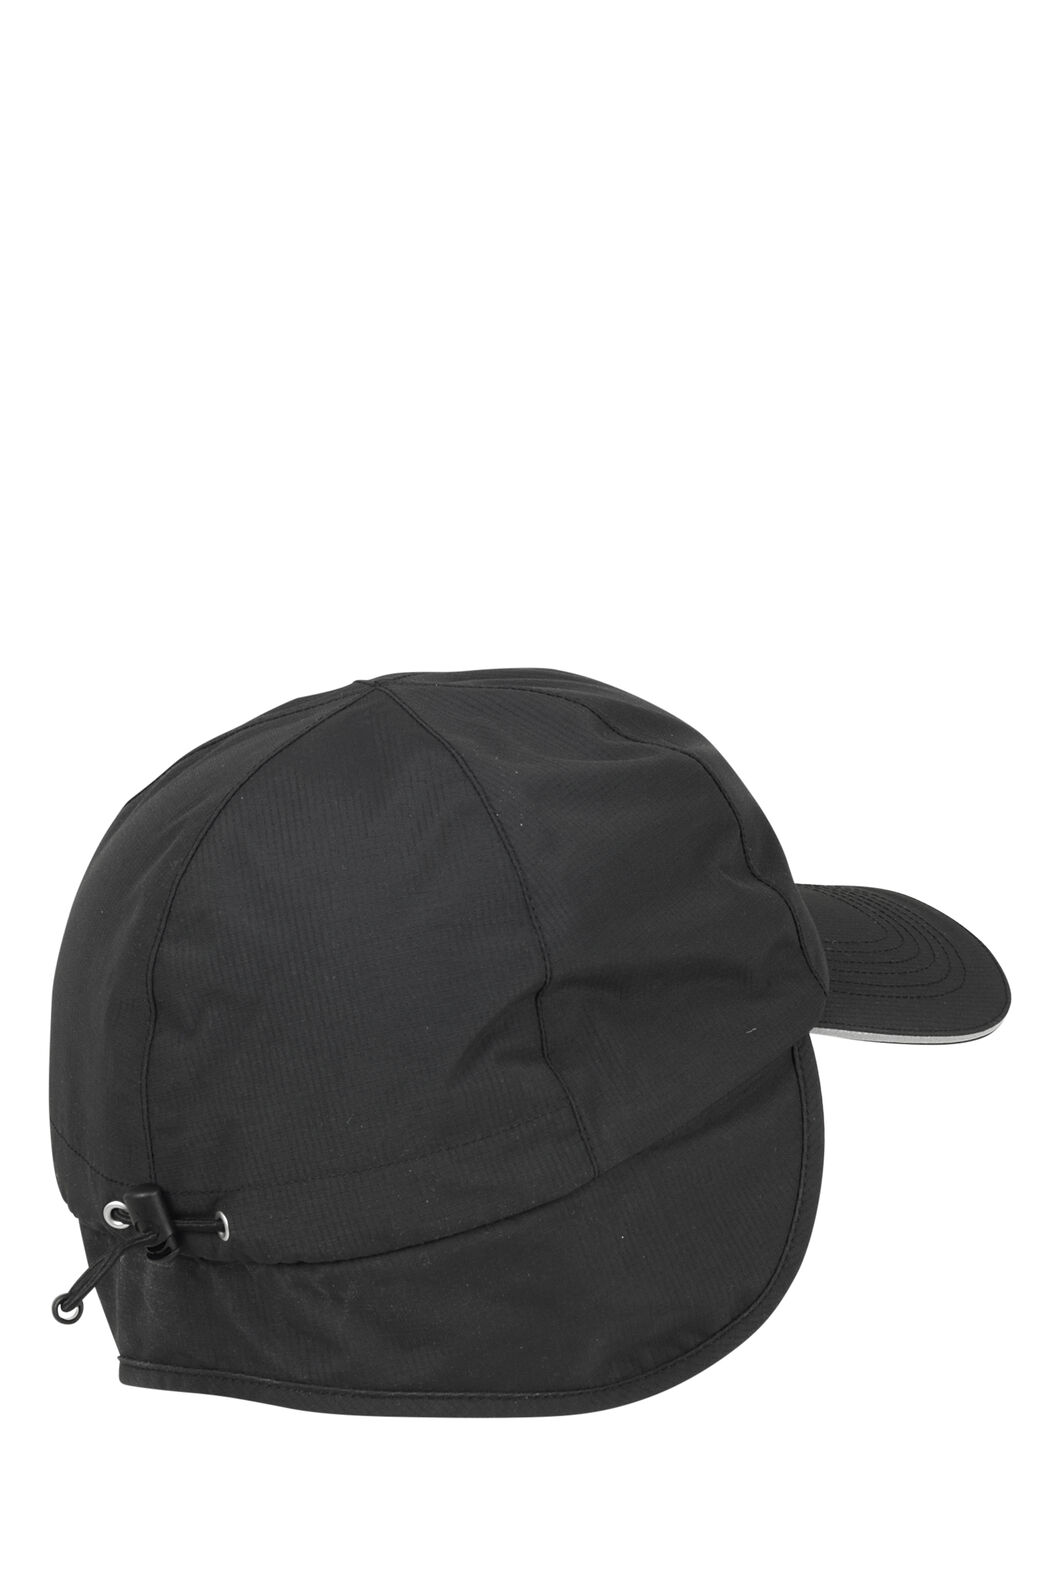 Macpac Waterproof Hat